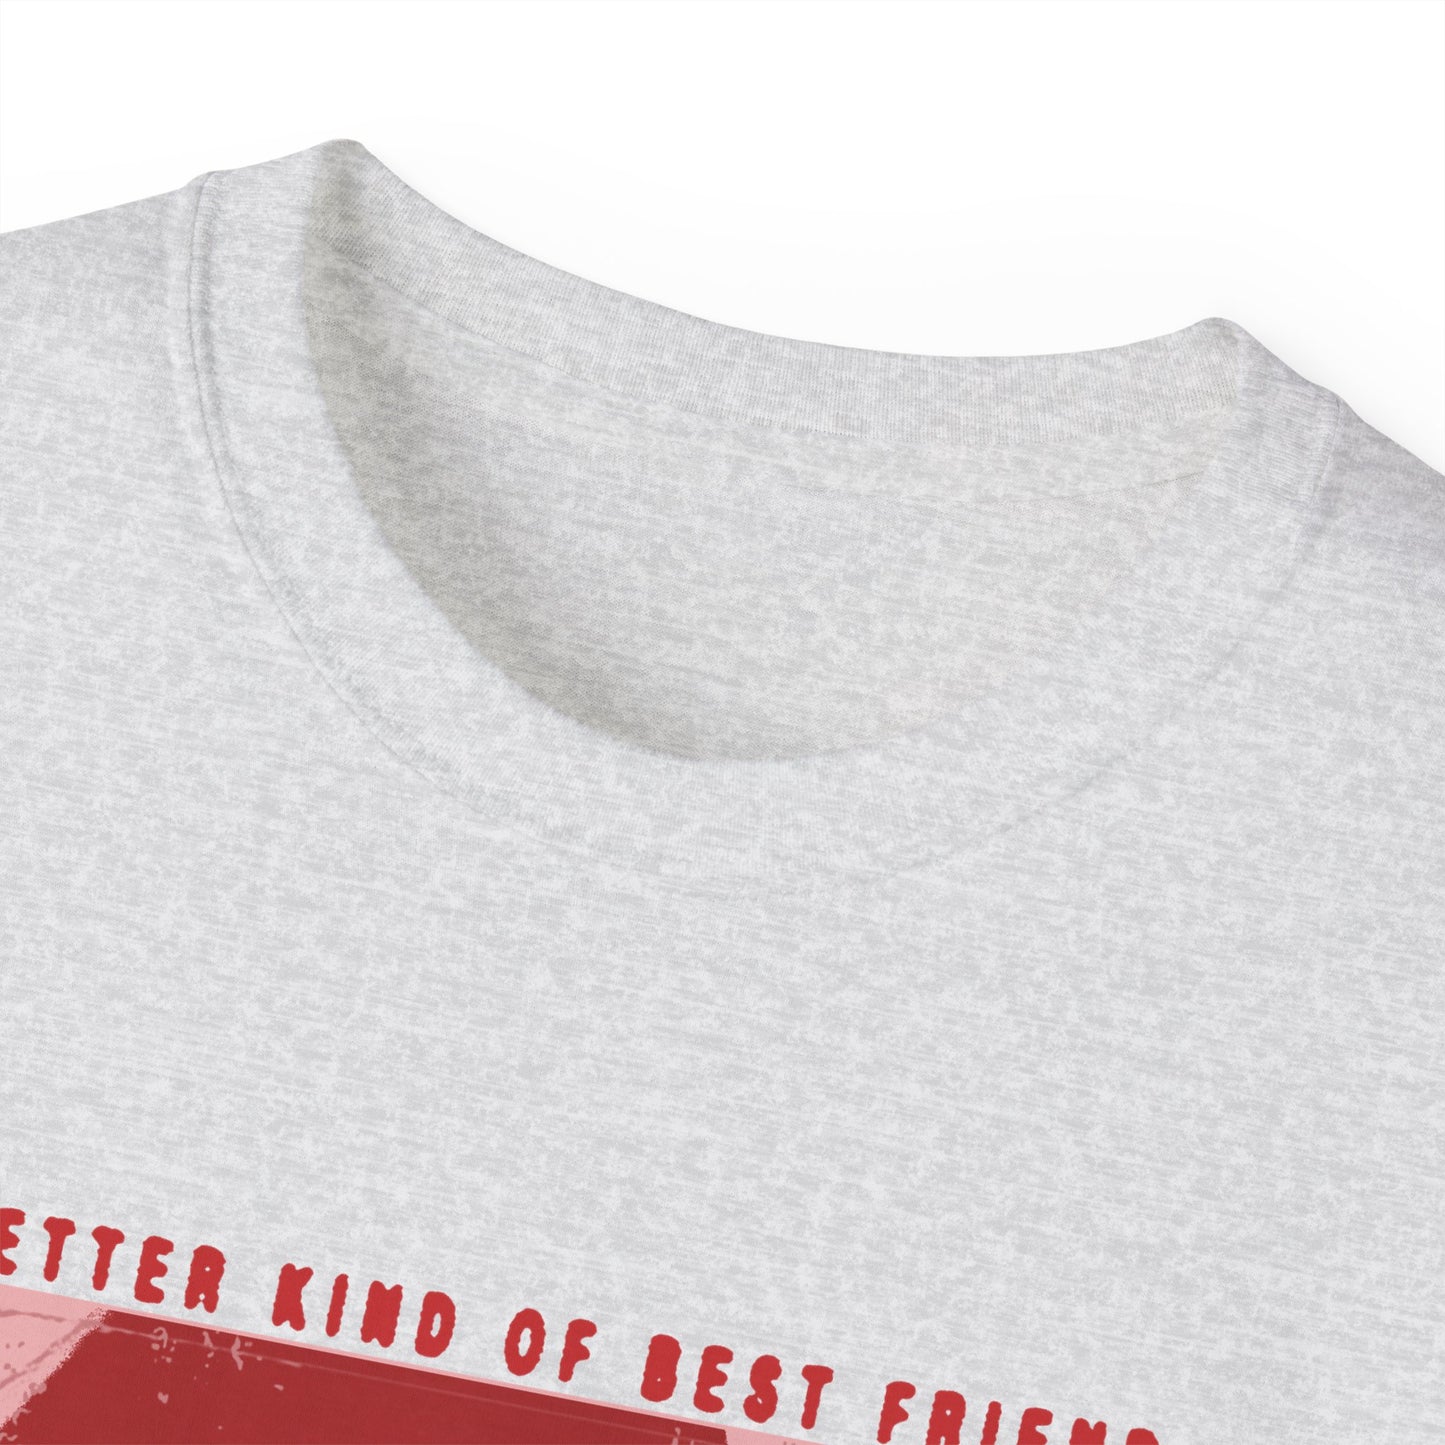 Better Kind Of Best Friend T-shirt